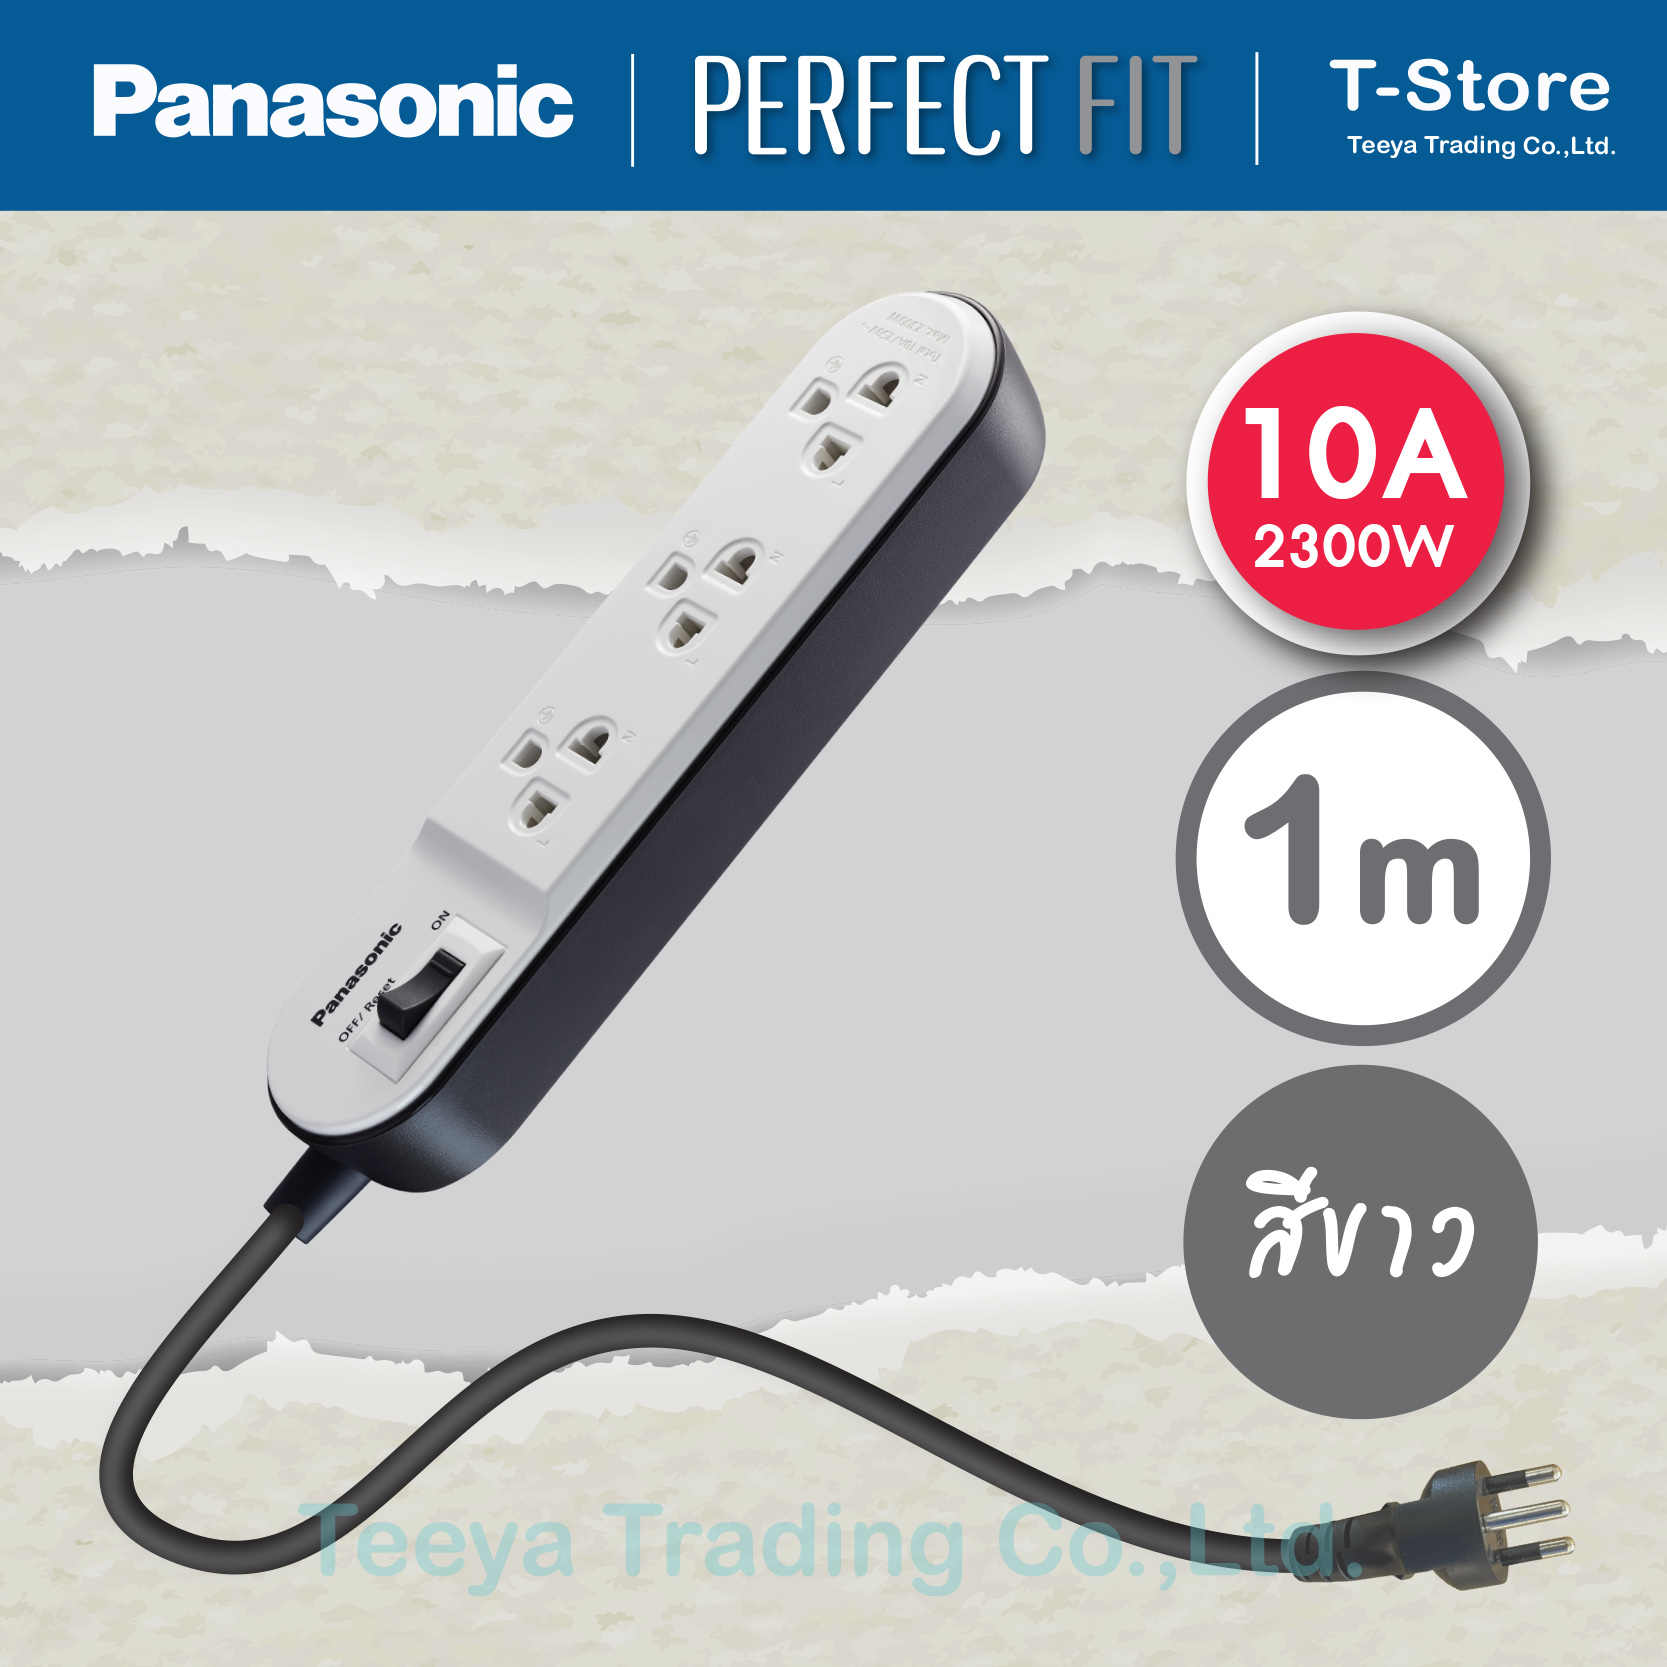 Panasonic Perfect FIT  รุ่น WCHG 24132 ปลั๊กพ่วง 3 เต้ารับ 1 สวิตช์คุมเมน 10A 2300W   สายยาว 1 M (มีสินค้าพร้อมส่ง สั่งซื้อได้เลย)